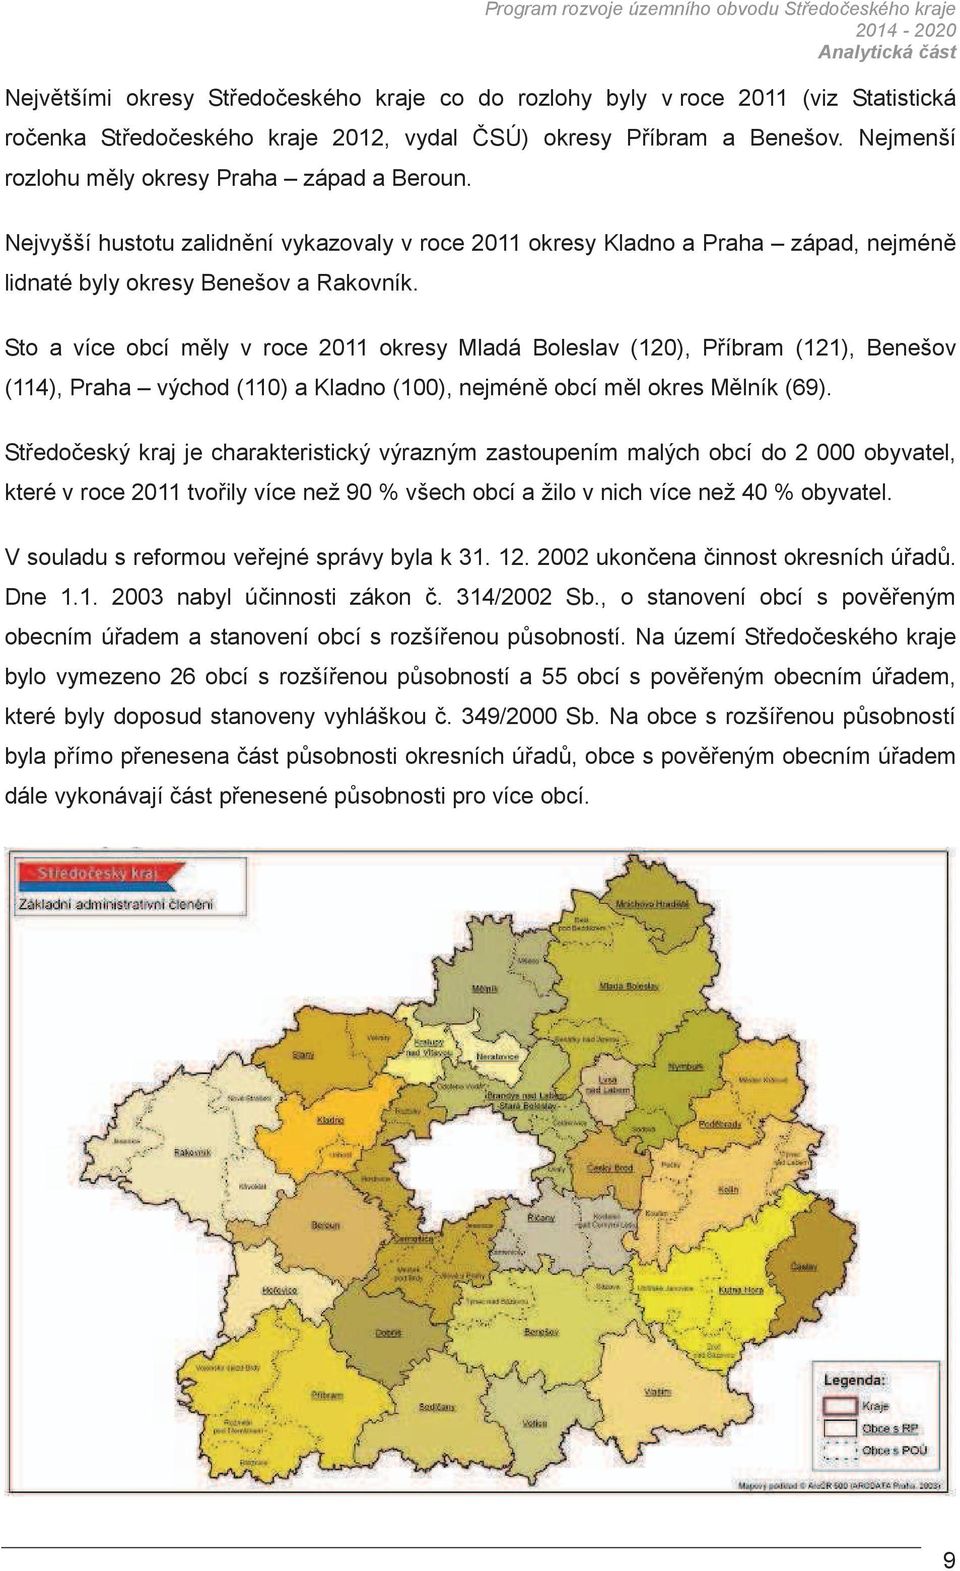 Sto a více obcí mly v roce 2011 okresy Mladá Boleslav (120), Píbram (121), Benešov (114), Praha východ (110) a Kladno (100), nejmén obcí ml okres Mlník (69).